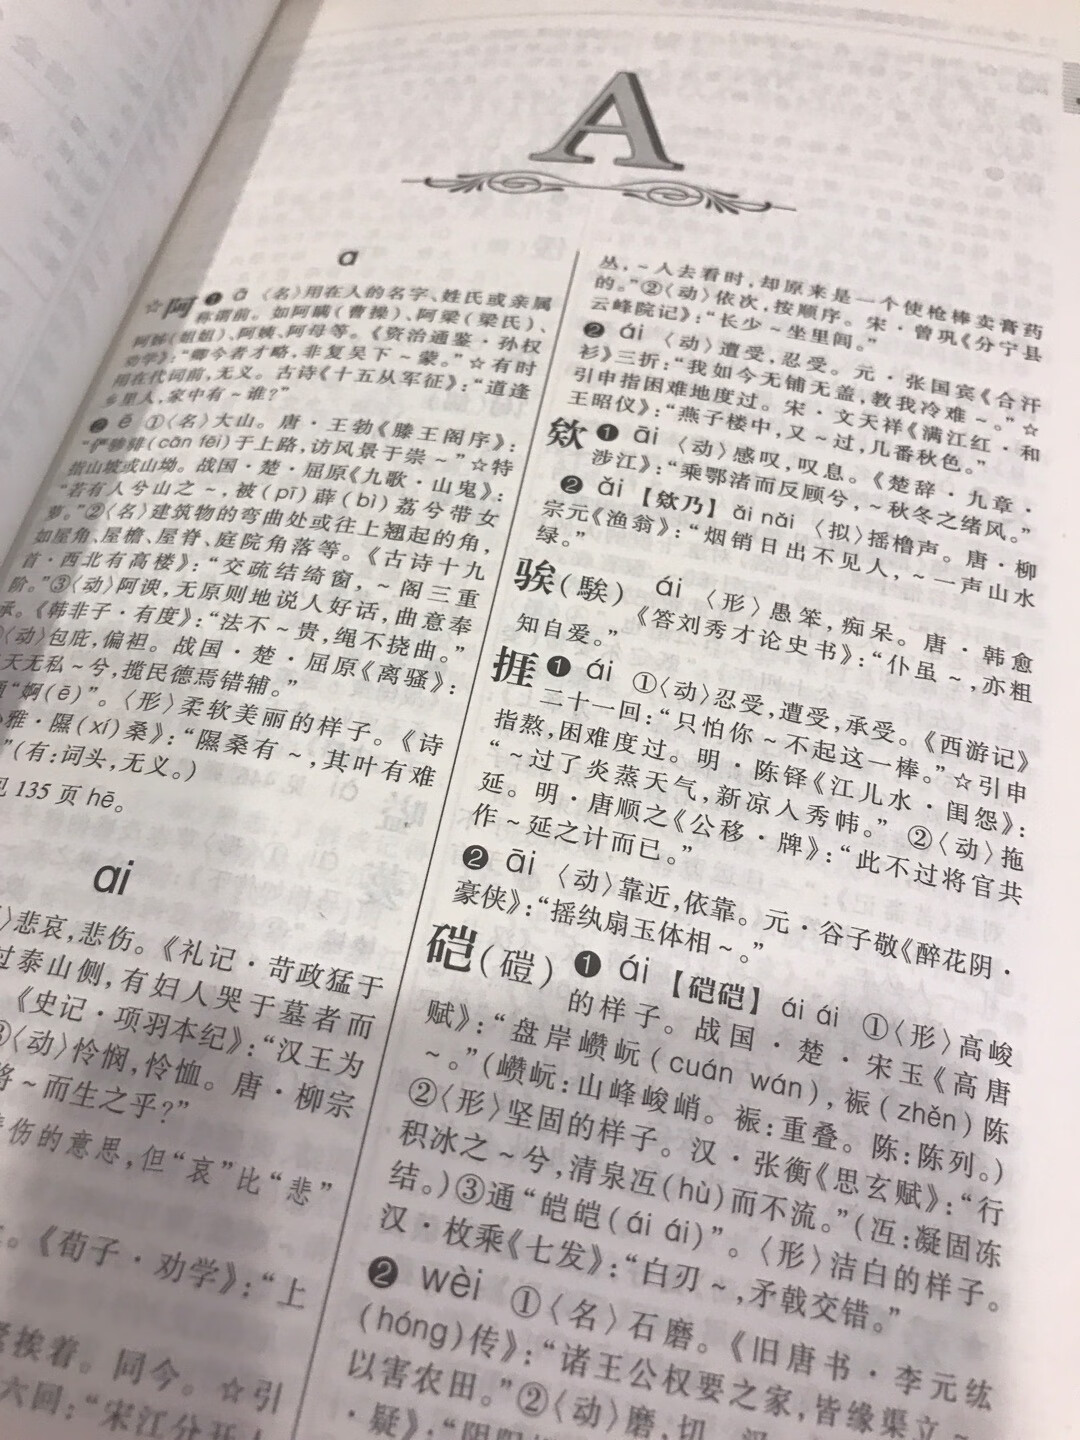 初中课外文言文阅读无注释的情况下是要有本字典查查的